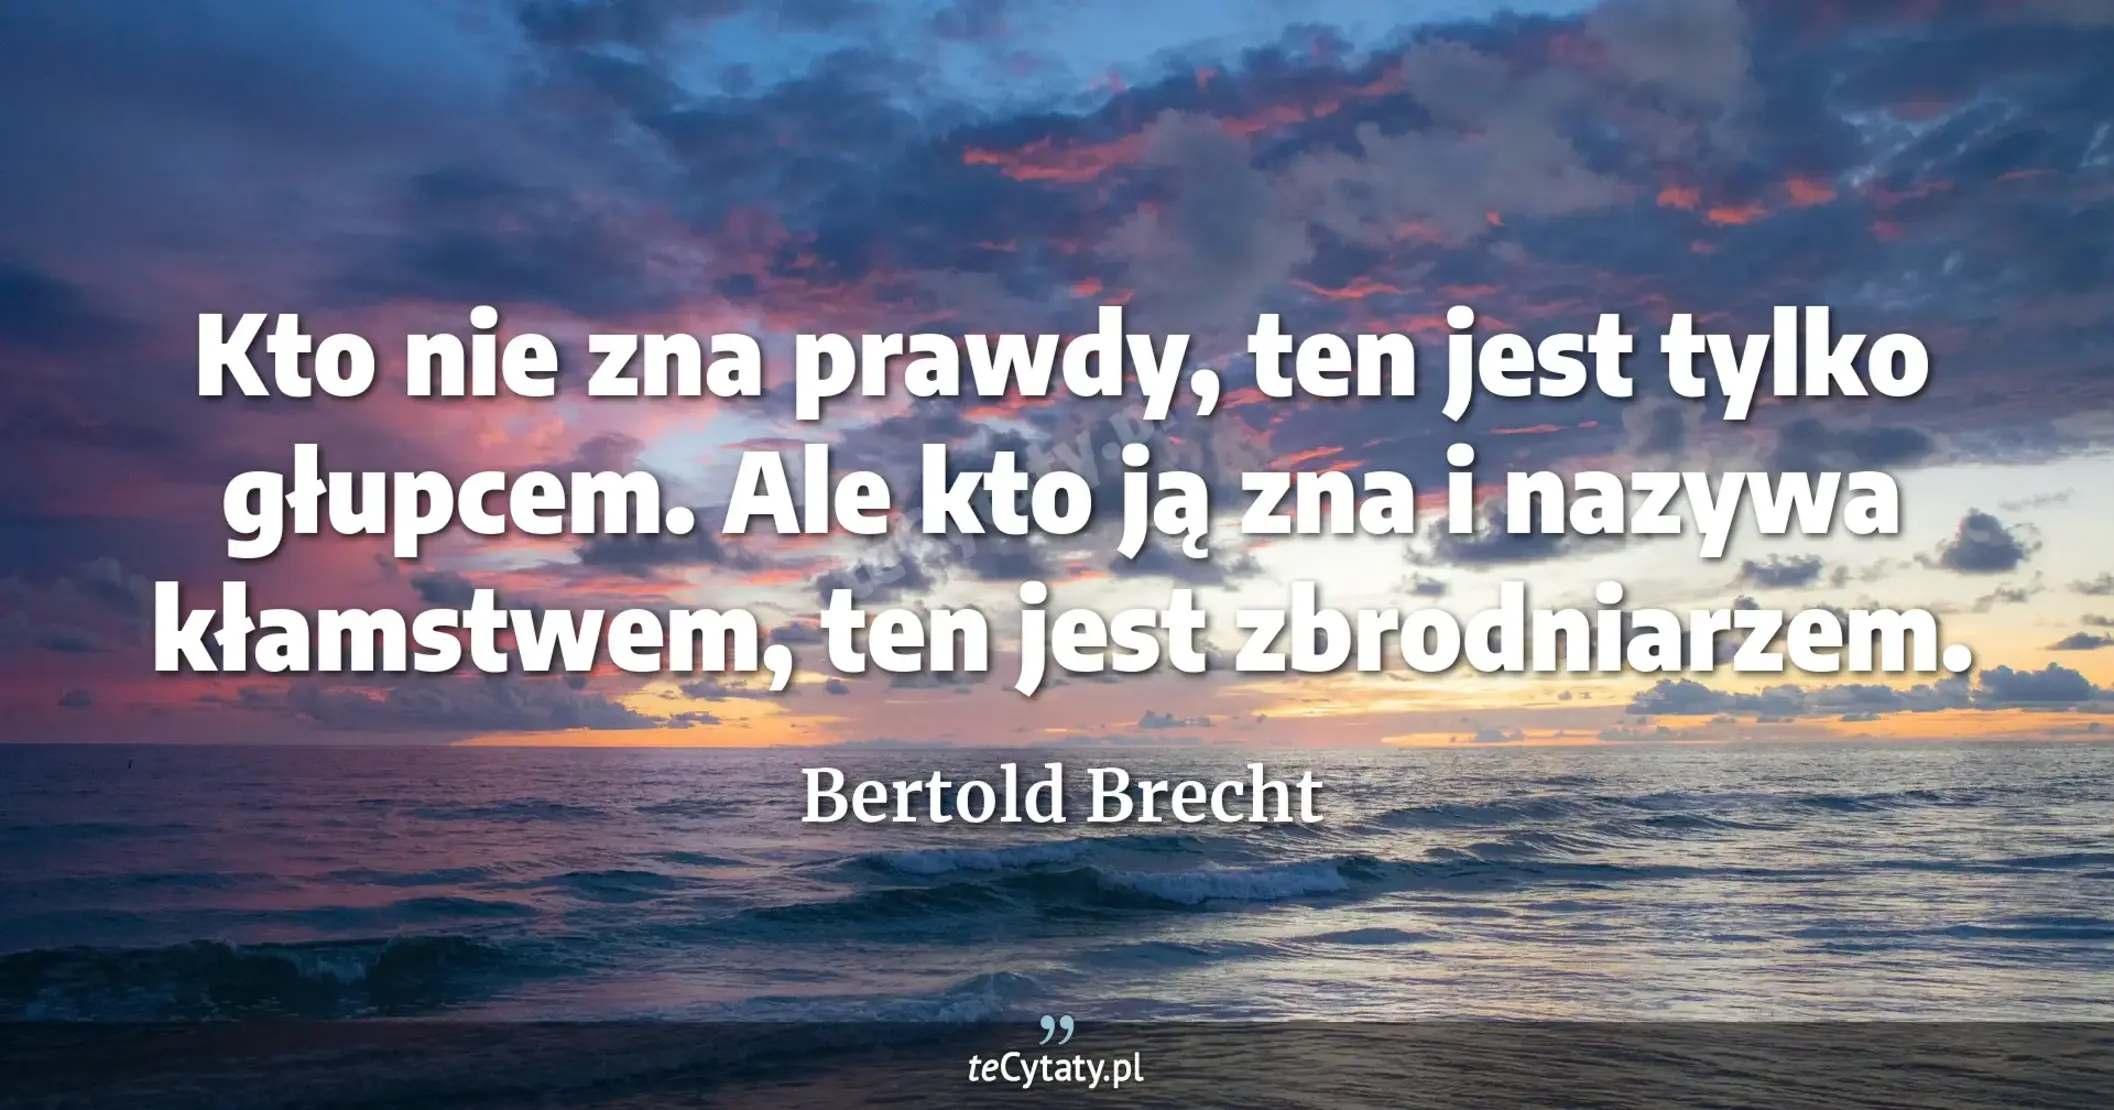 Kto nie zna prawdy, ten jest tylko głupcem. Ale kto ją zna i nazywa kłamstwem, ten jest zbrodniarzem. - Bertold Brecht